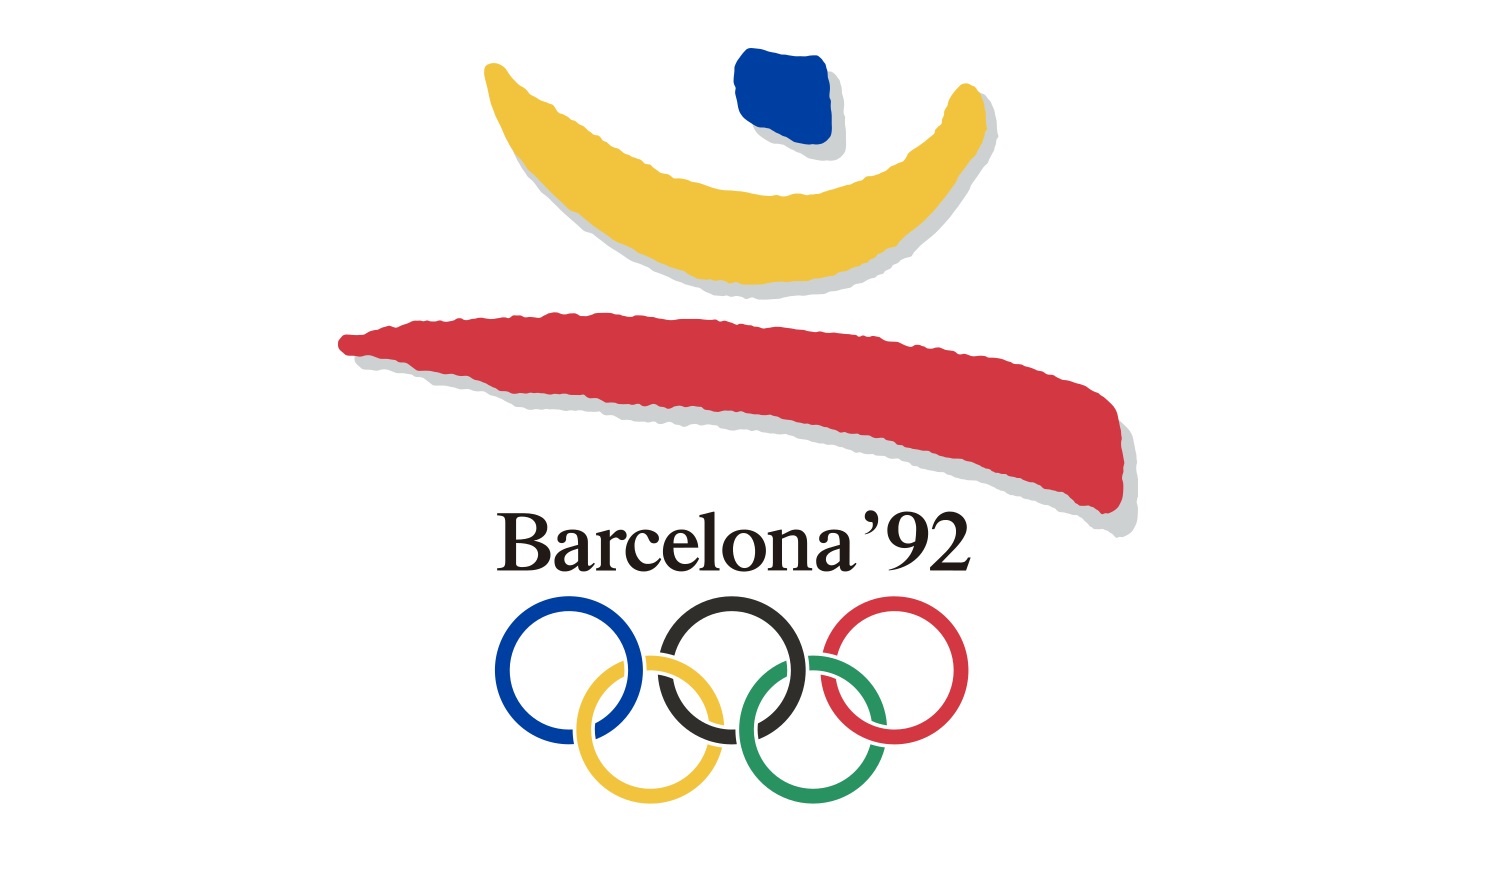 XXV Letnie Igrzyska Olimpijskie 1992